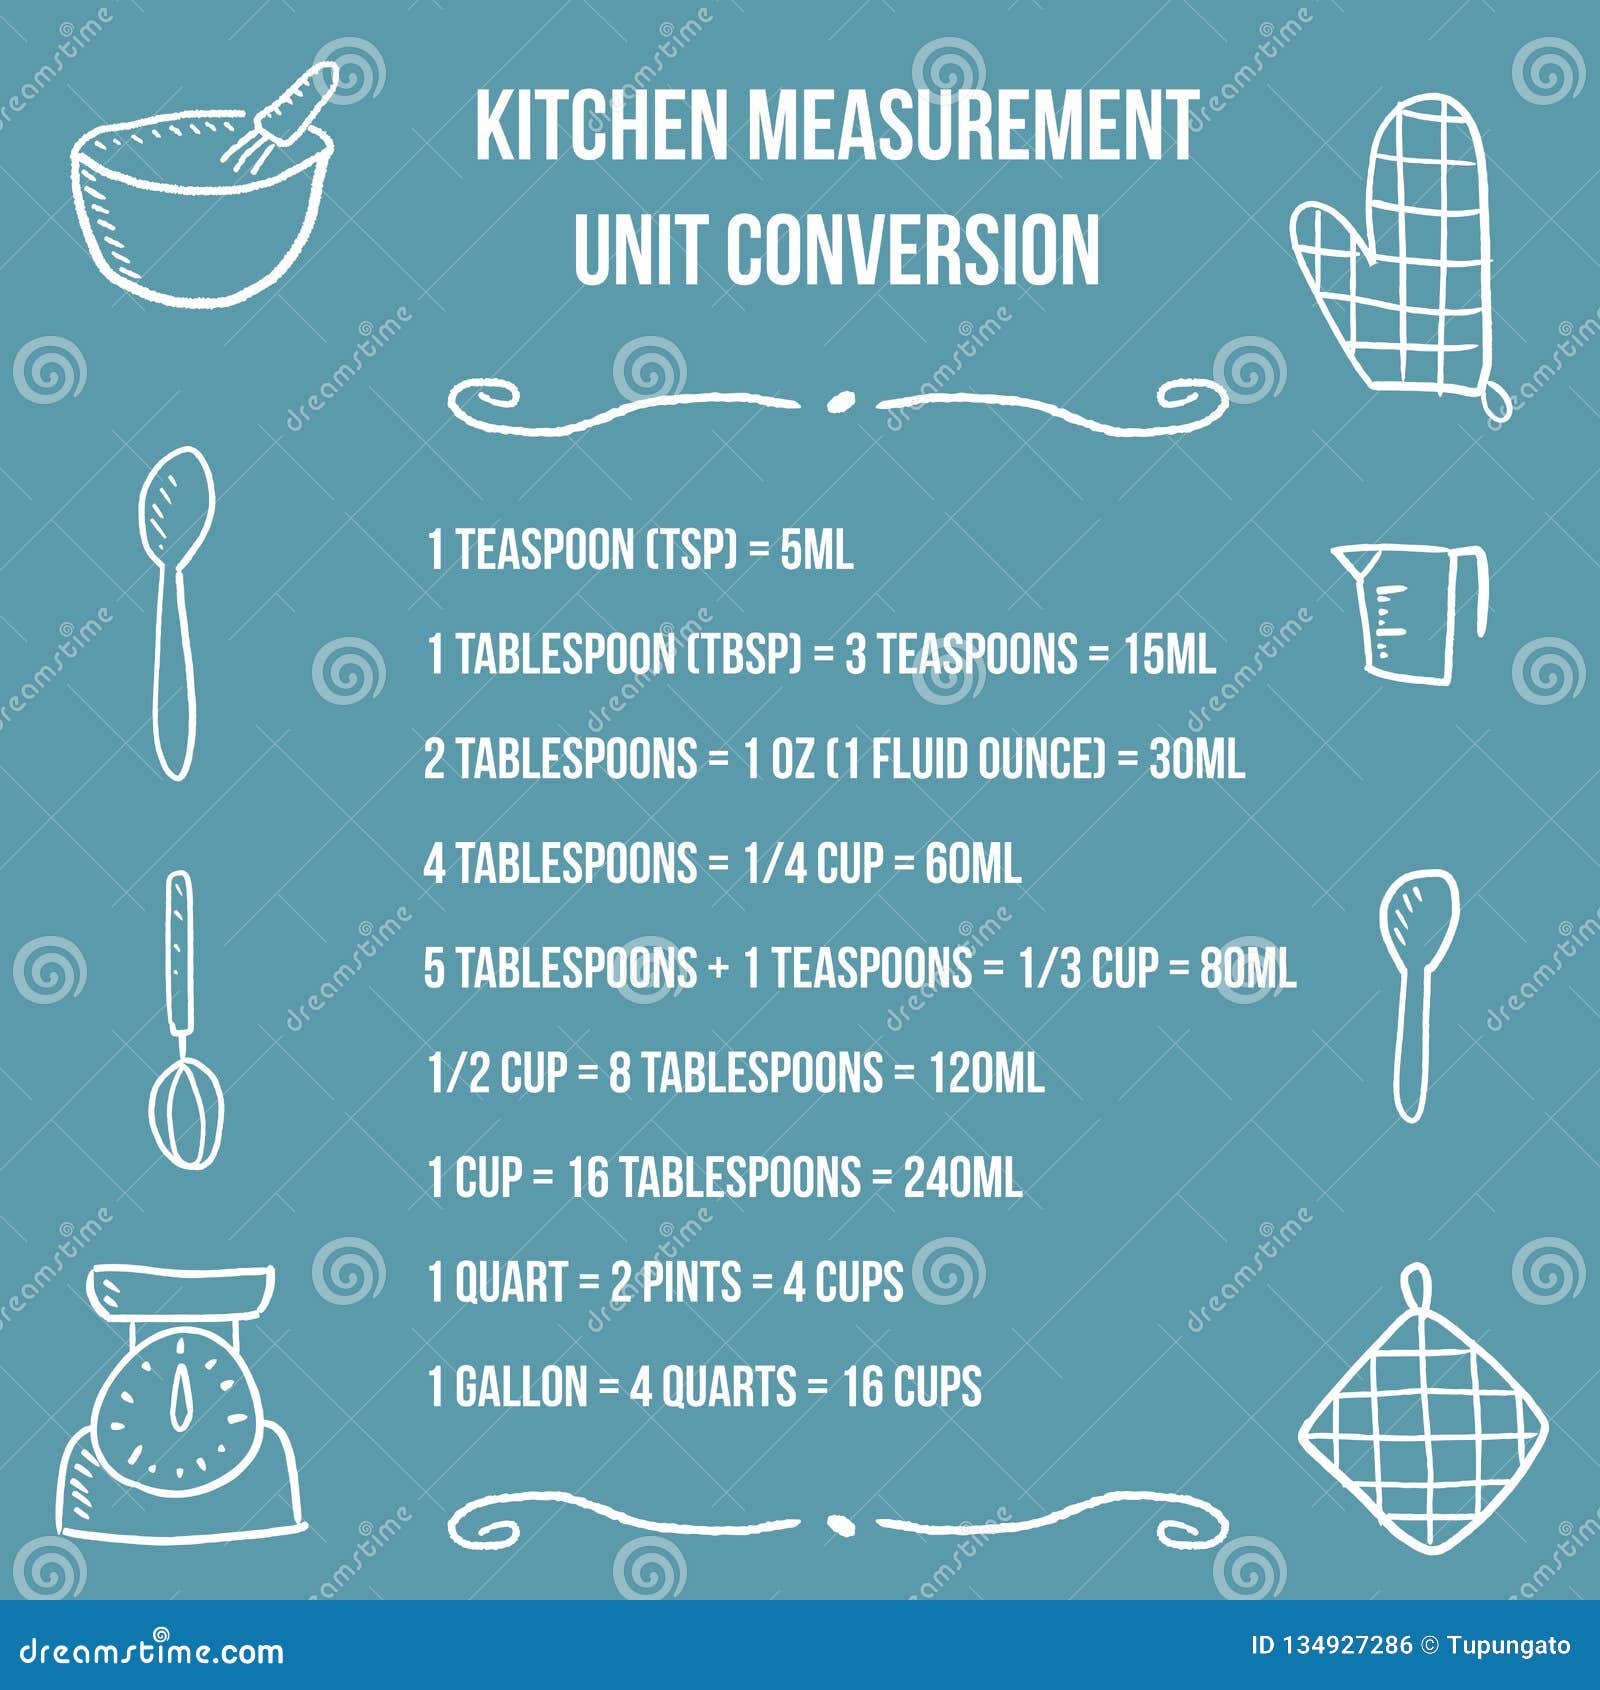 https://thumbs.dreamstime.com/z/kitchen-unit-conversion-chart-baking-measurement-units-cooking-design-134927286.jpg